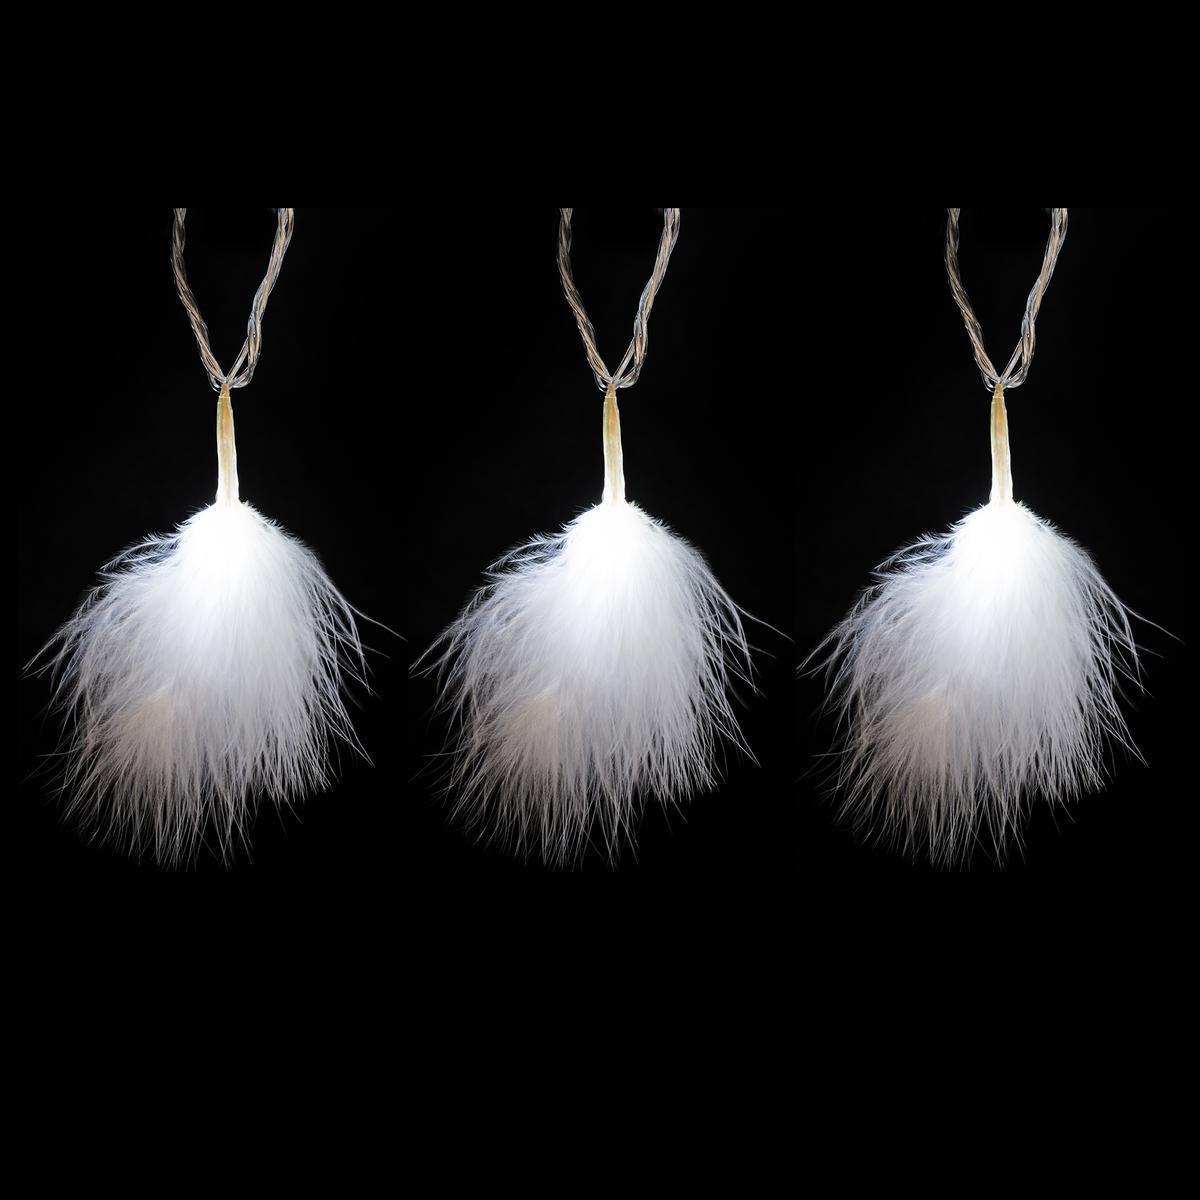 Guirlande électrique à plumes 40 LEDs - 390 + 300 cm - Blanc